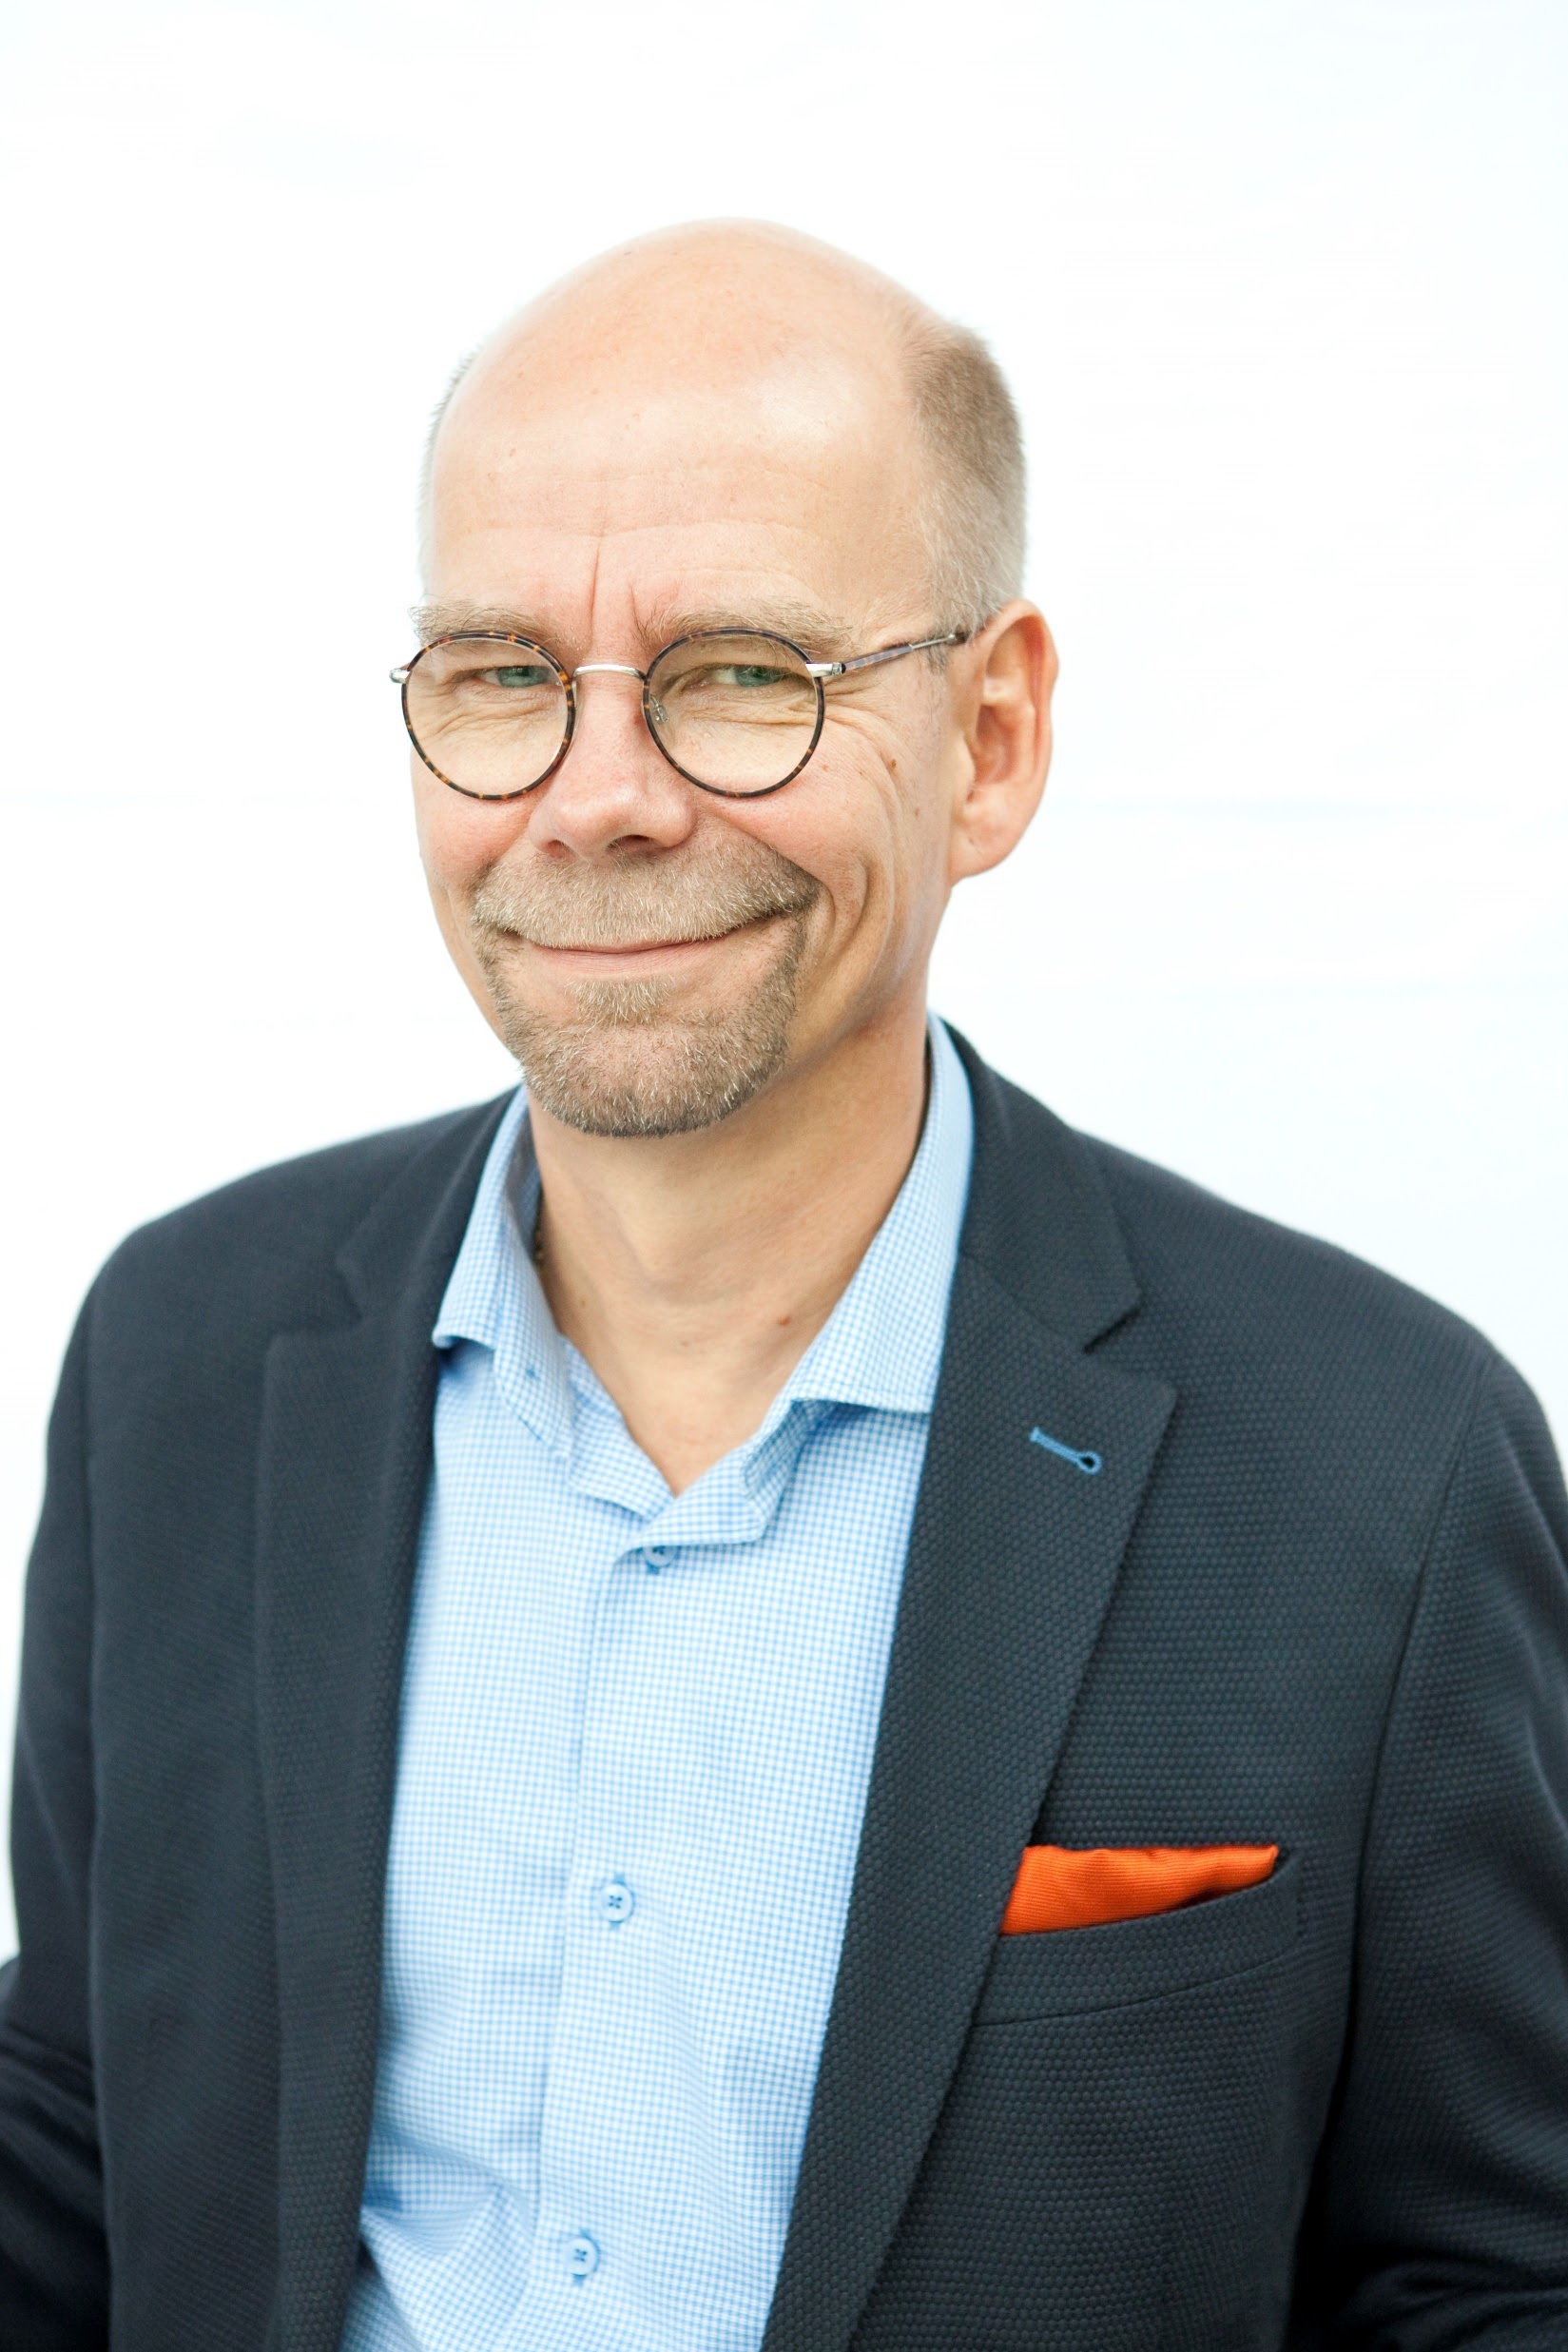 Juha-Pekka Pirvola